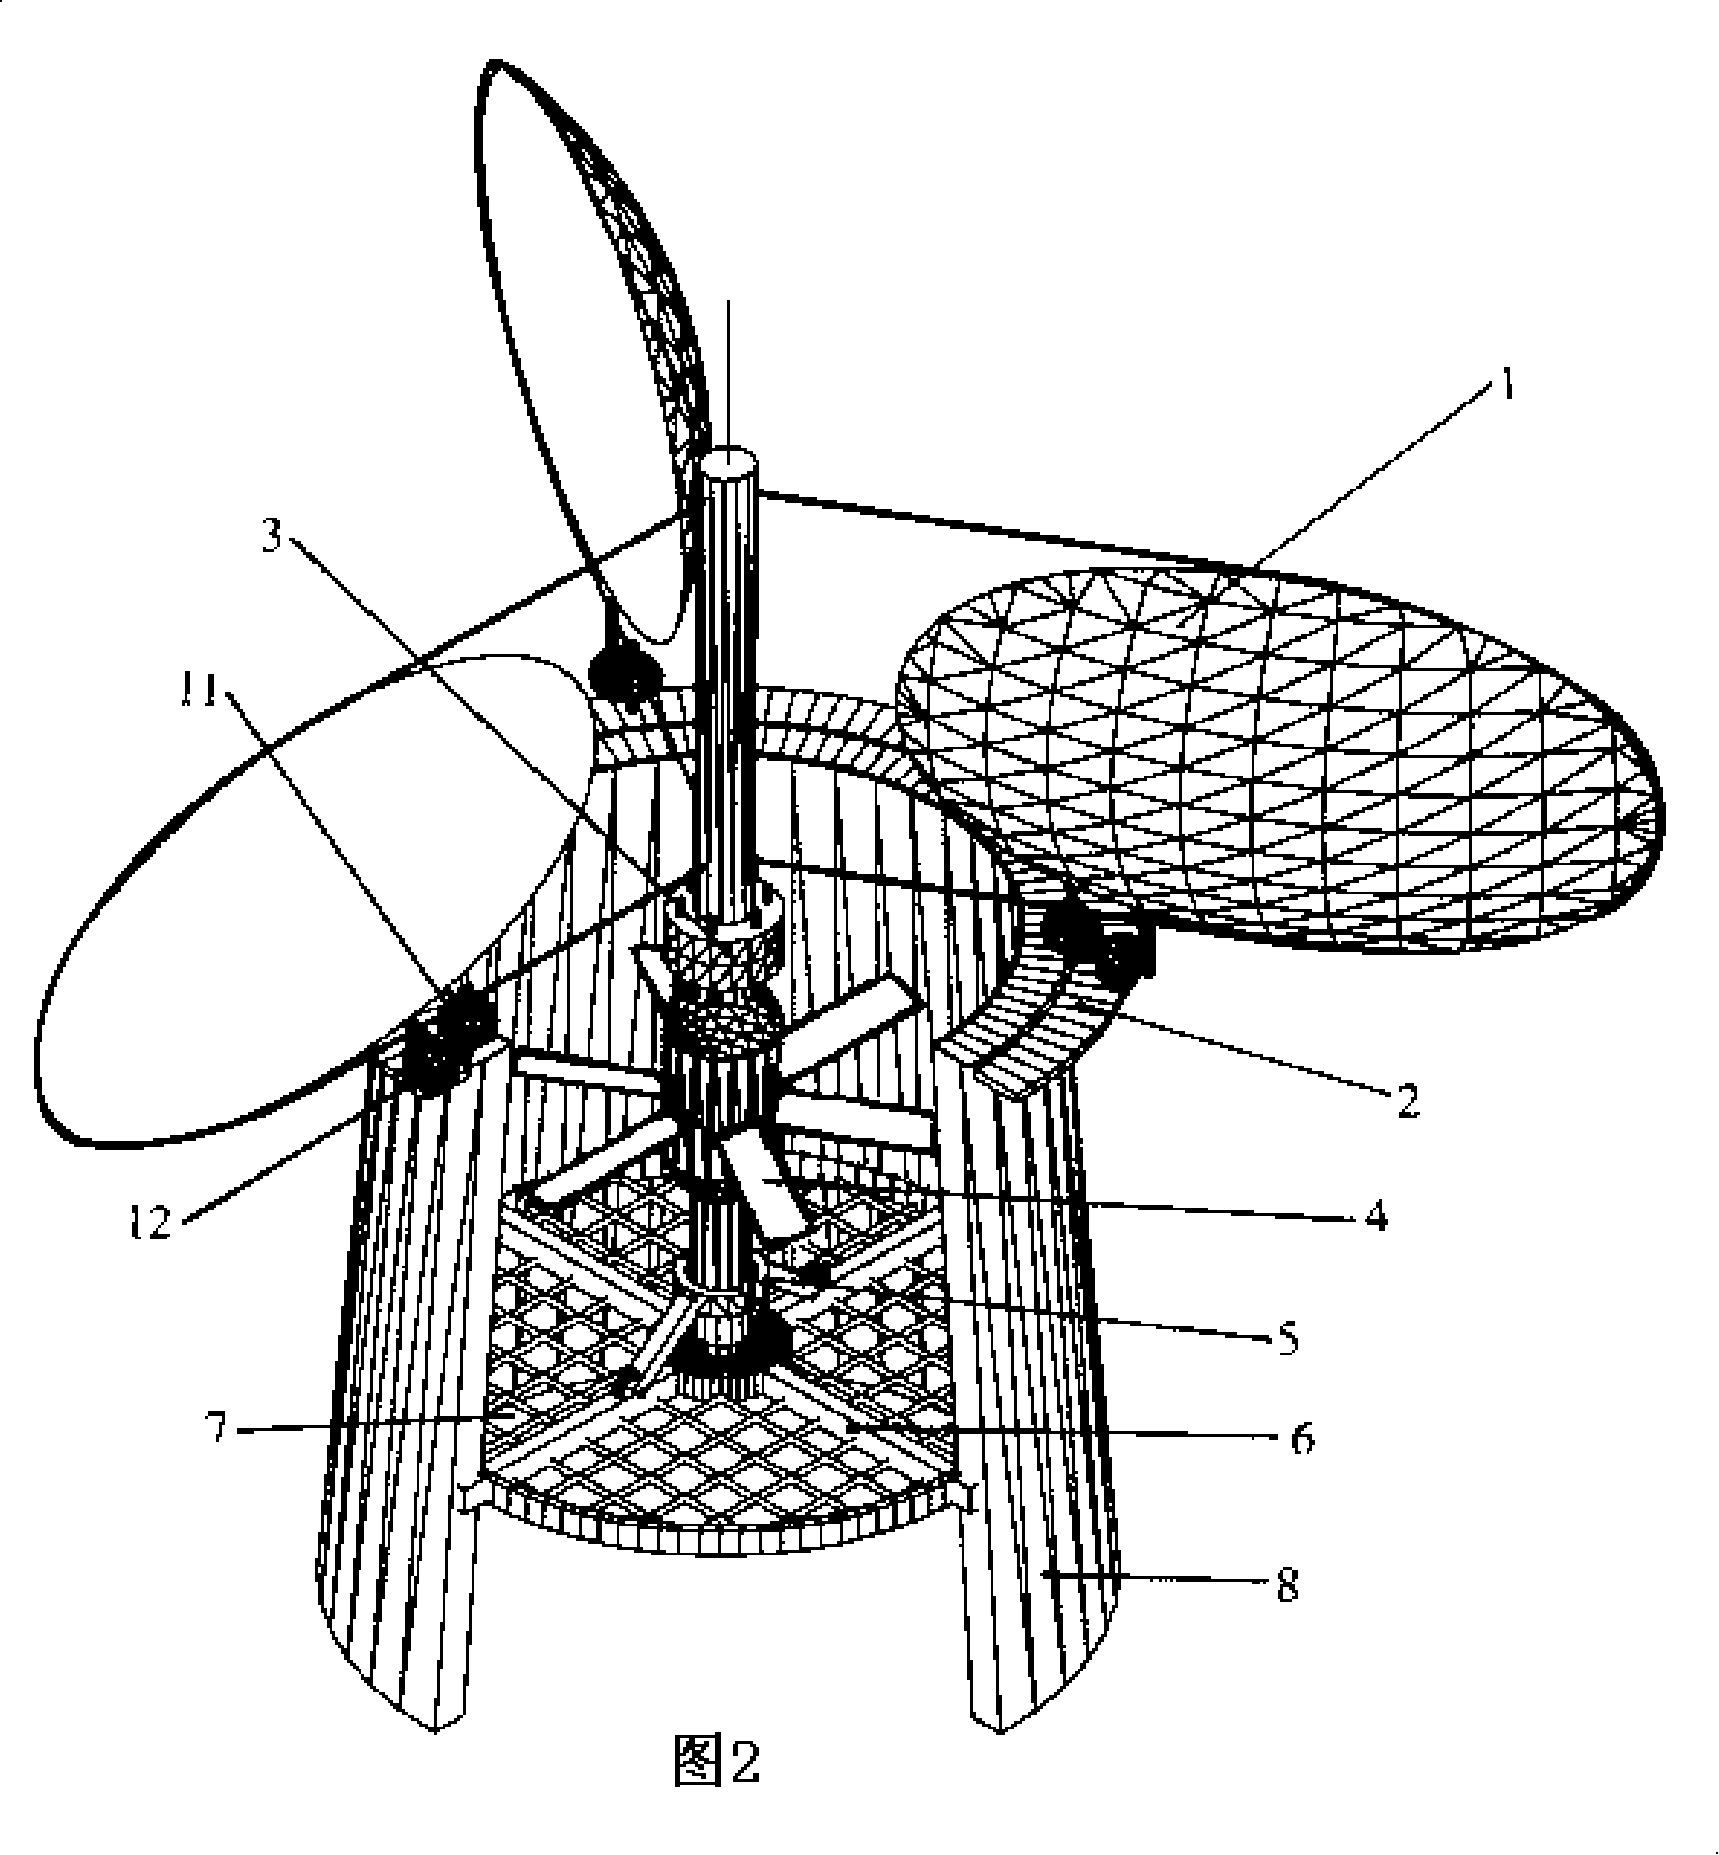 Ventilating tower wind-power axial flow fan